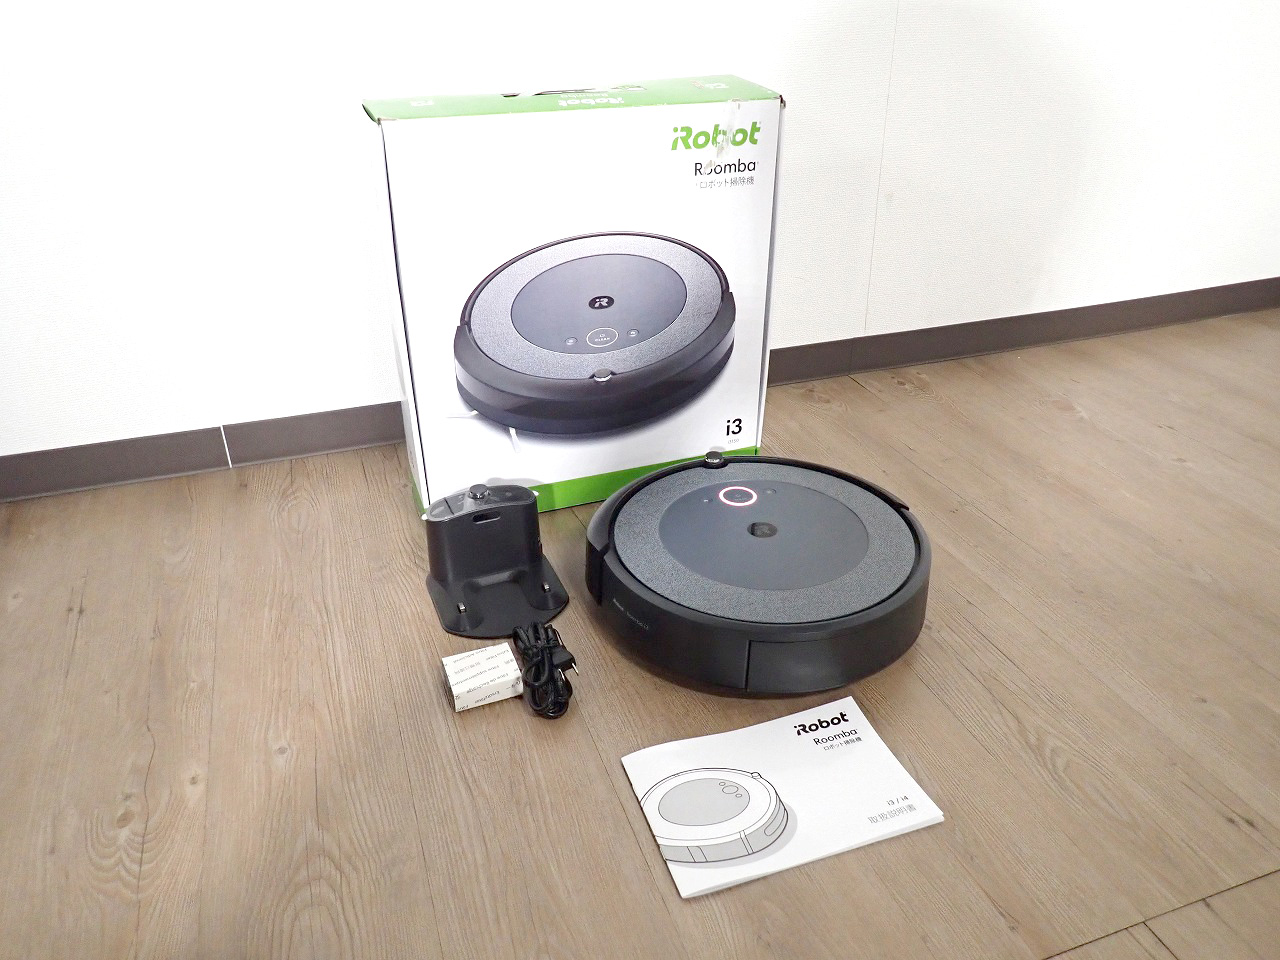 【未開封】i Robot Roomba i3＋i355060 RVD-Y1